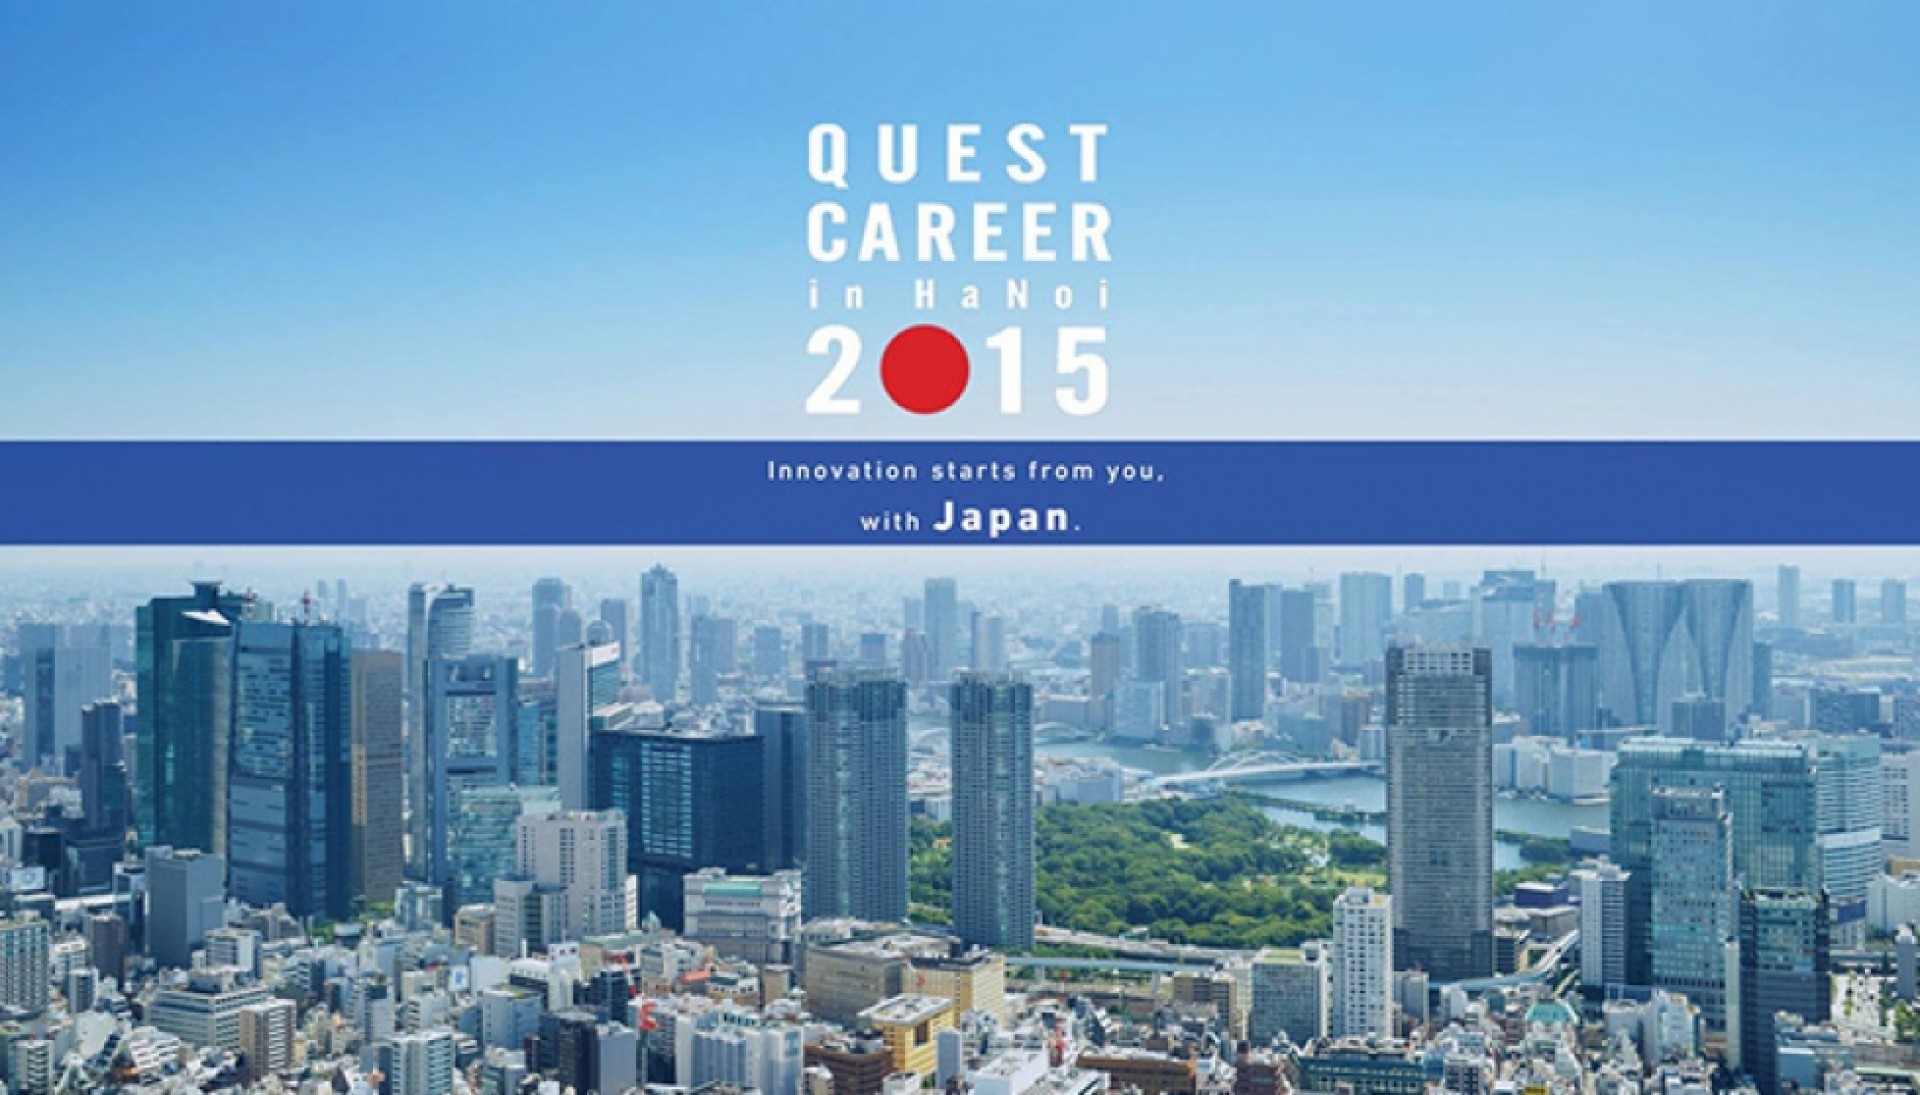 Cơ Hội Trải Nghiệm Với Các Doanh Nghiệp Nhật Bản Cùng Sự Kiện Quest Career 2015